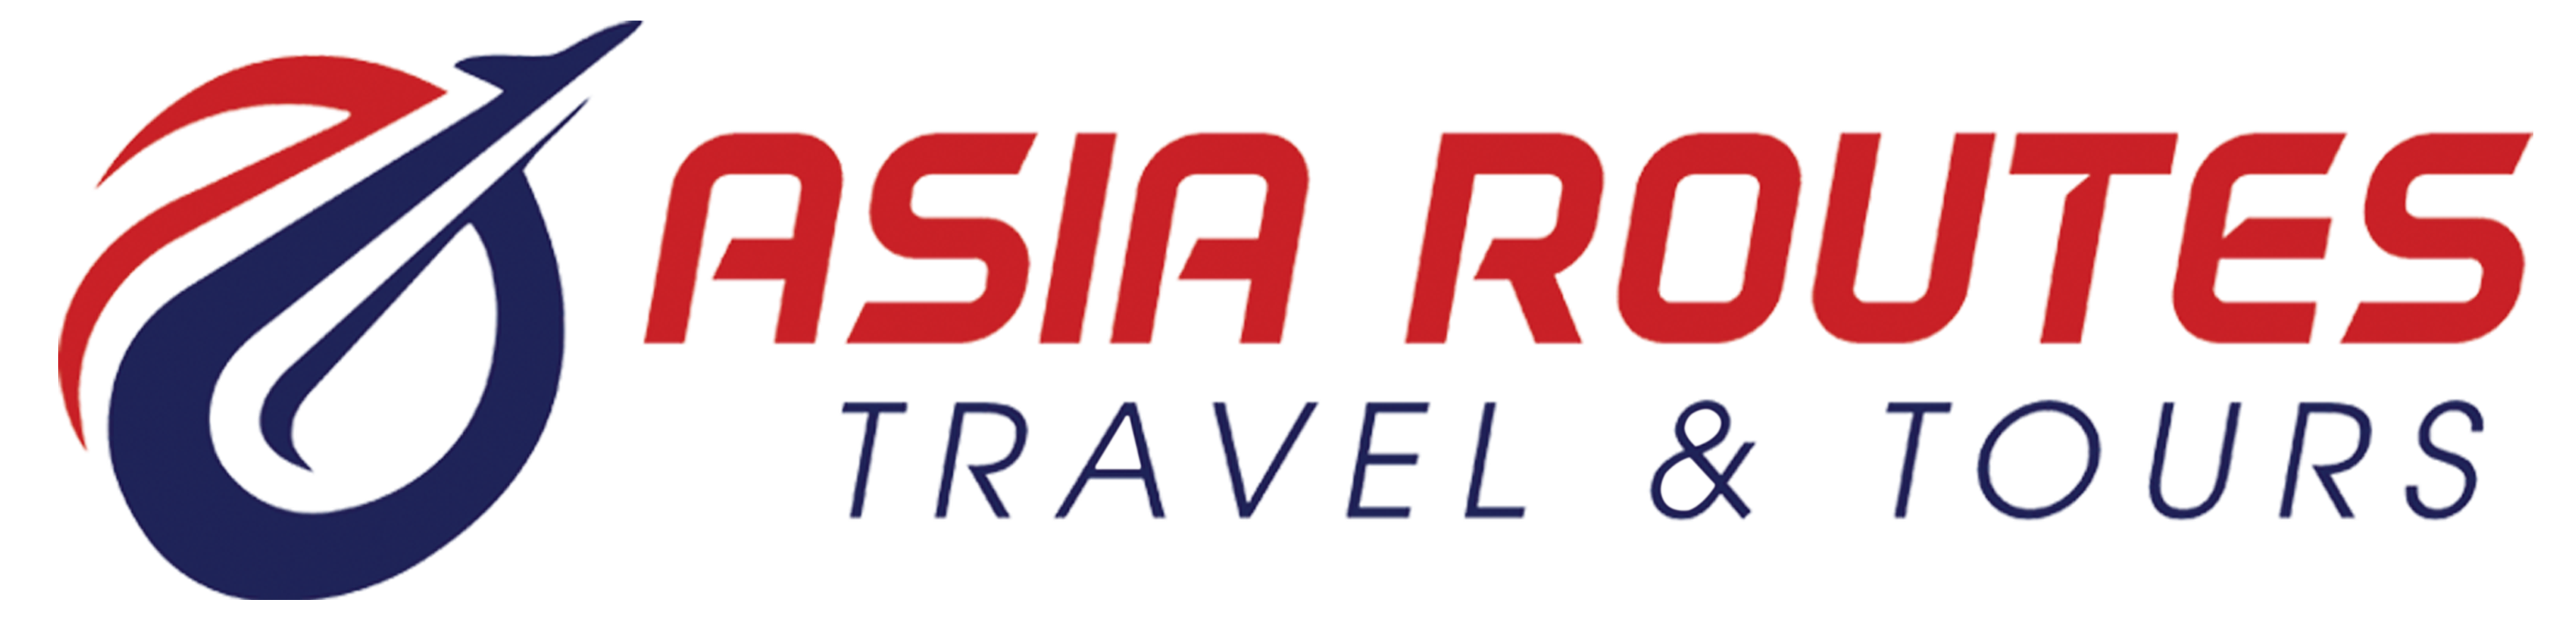 Asia Routes Travel & Tours |   Apartment Bob